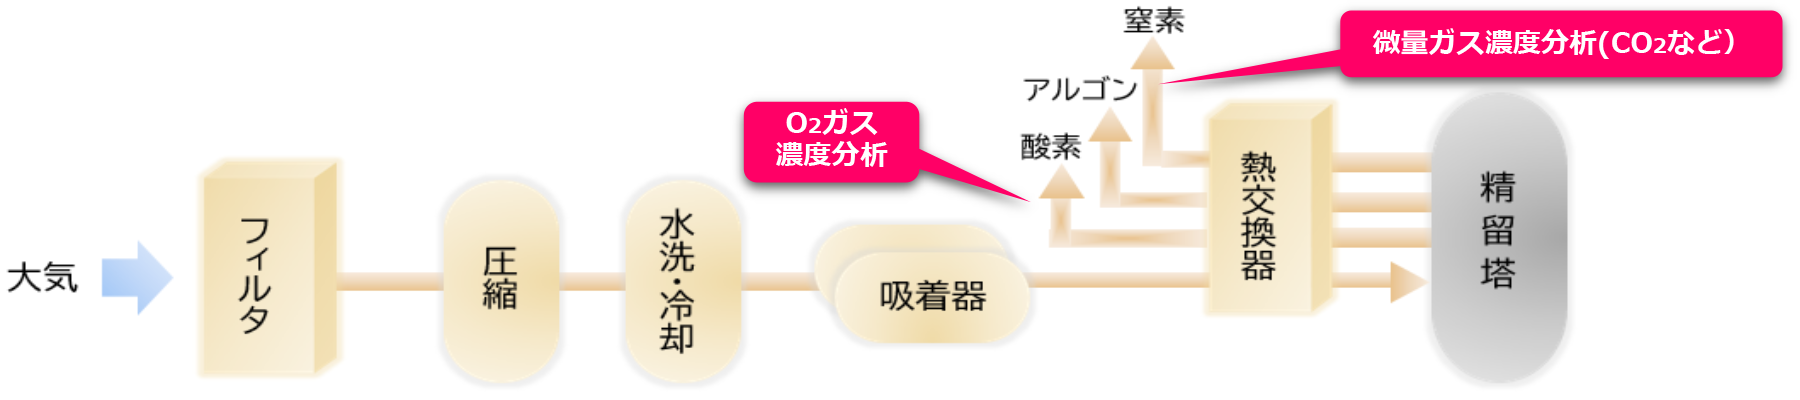 ガス製造プロセスイメージ図